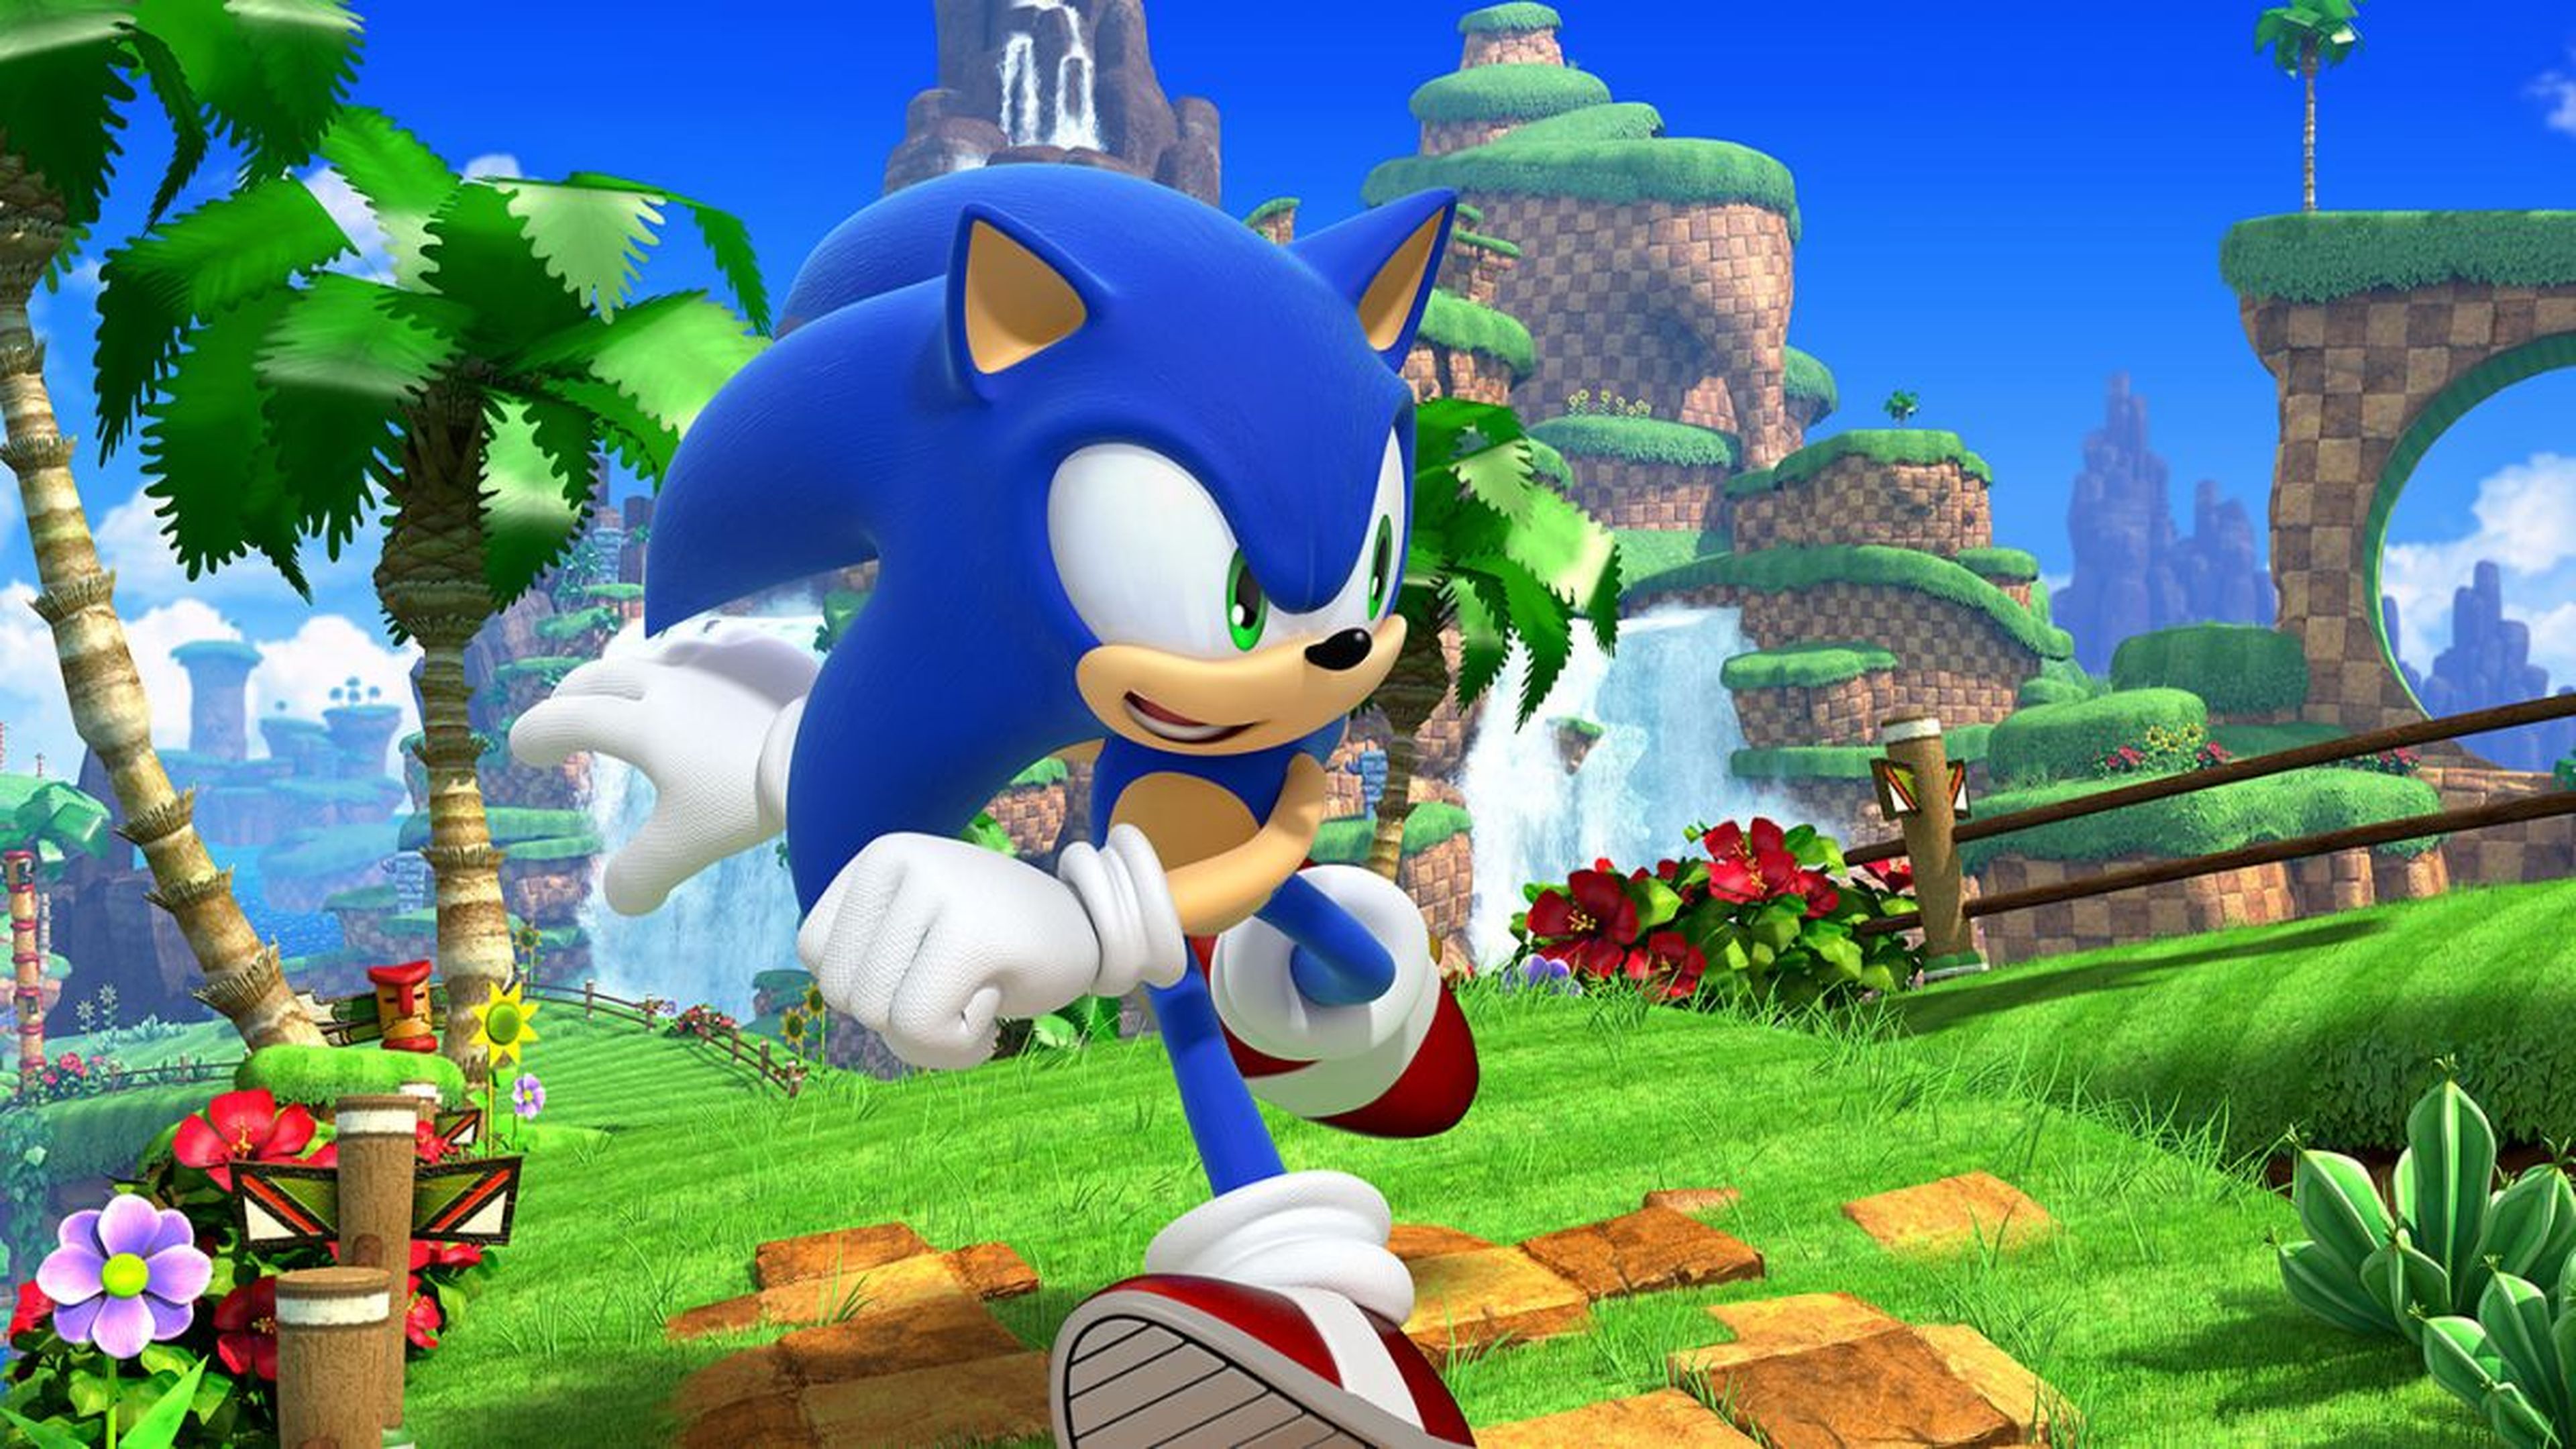 Mejores ofertas e historial de precios de SEGA Sonic the Hedgehog